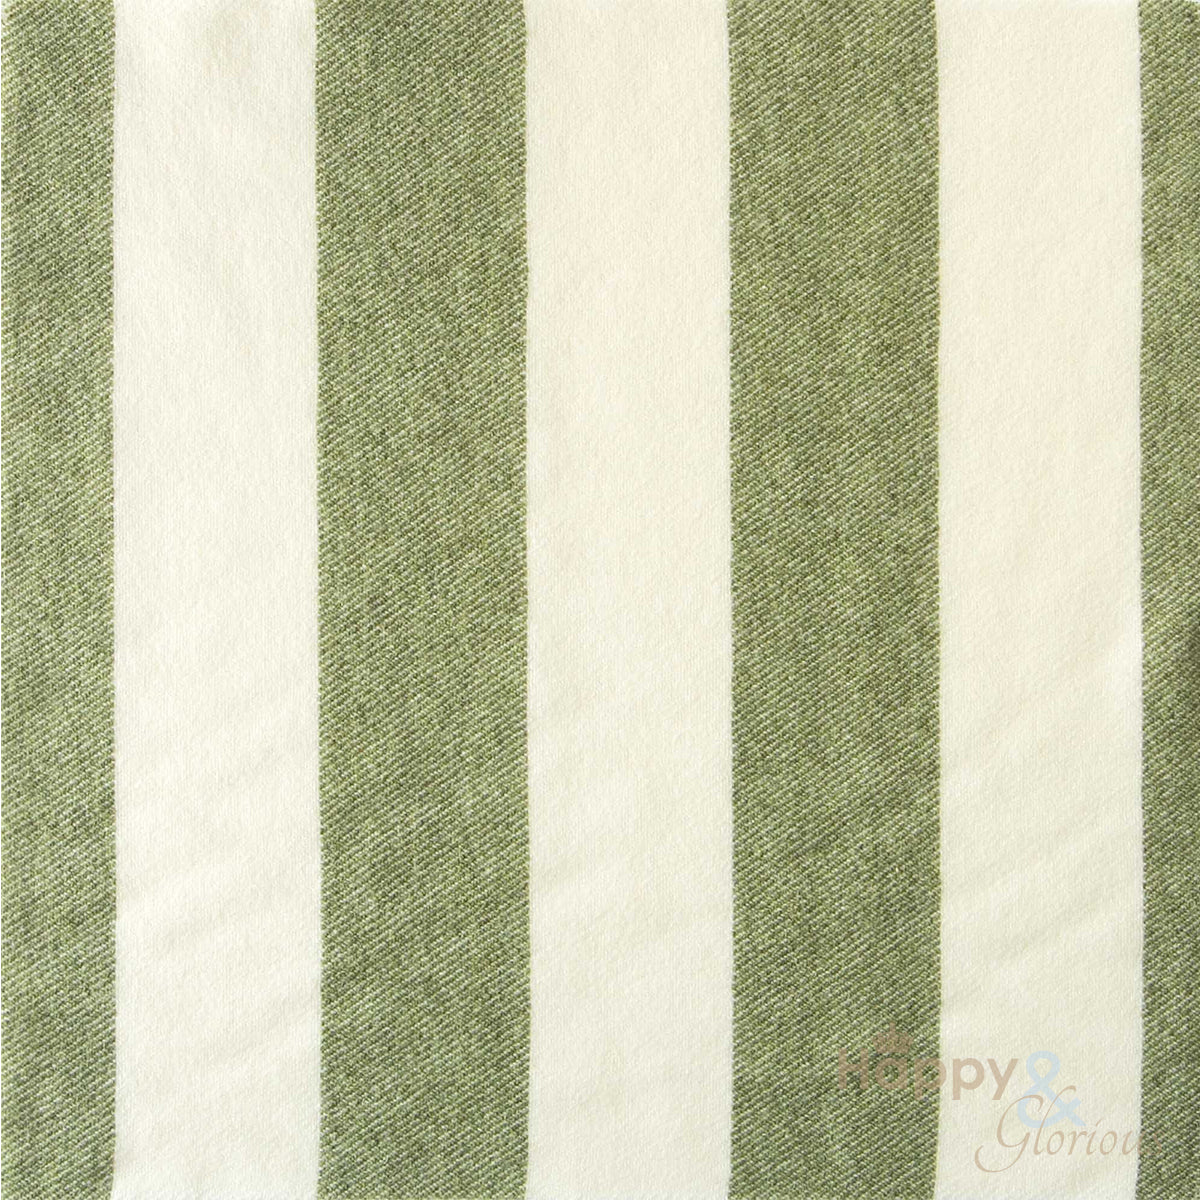 Green 'broadstripe' pure wool blanket by Melin Tregwynt